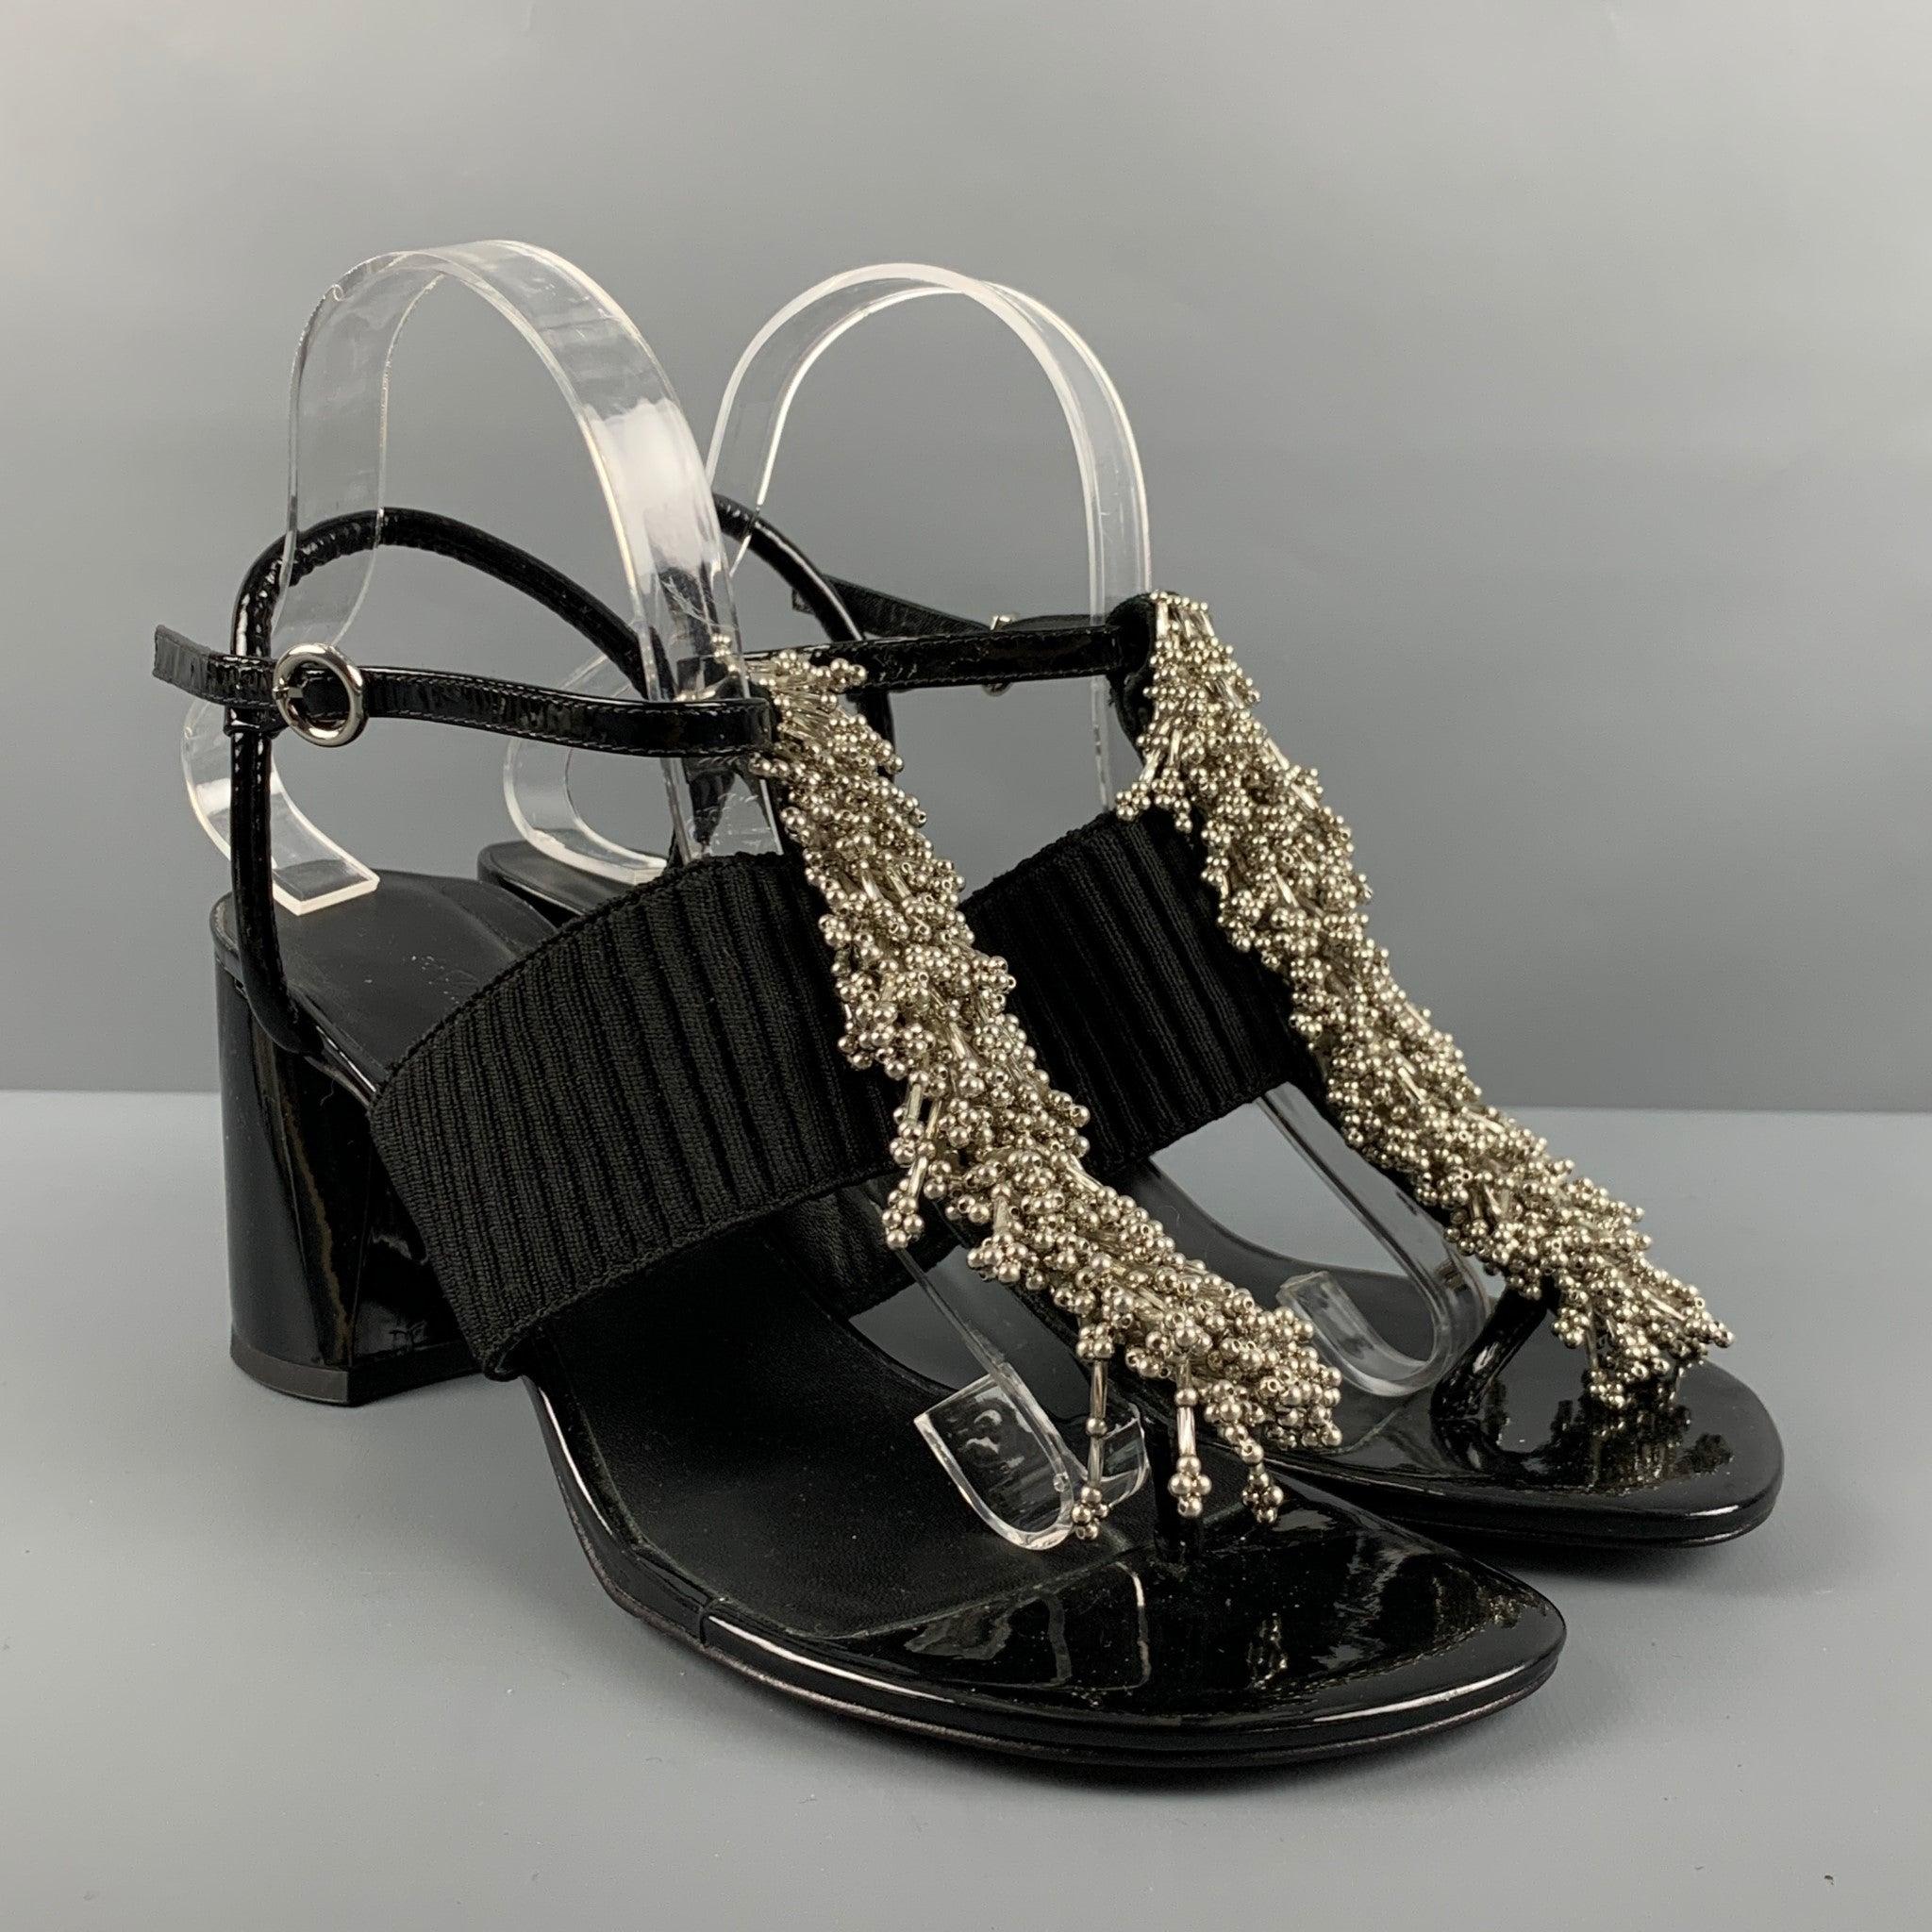 Les sandales 3.1 PHILLIP LIM sont réalisées en cuir verni noir et présentent des perles argentées sur le devant, un talon rond et épais, un support élastique et une bride de cheville. Livré avec un sac à poussière.
Très bon état d'usage. Signes